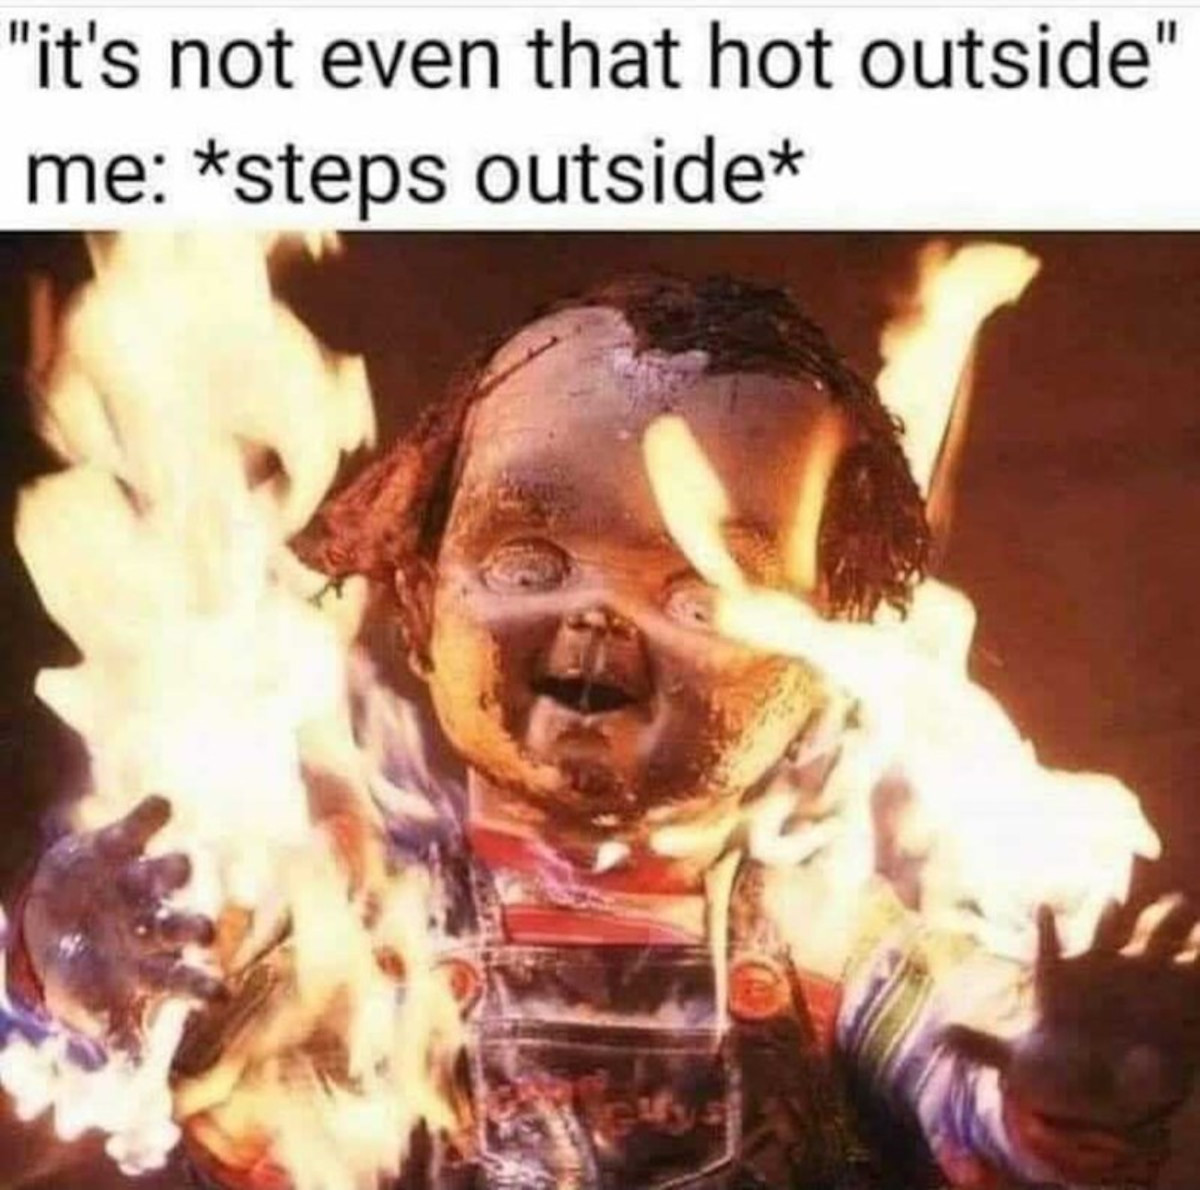 Beatin' the heat